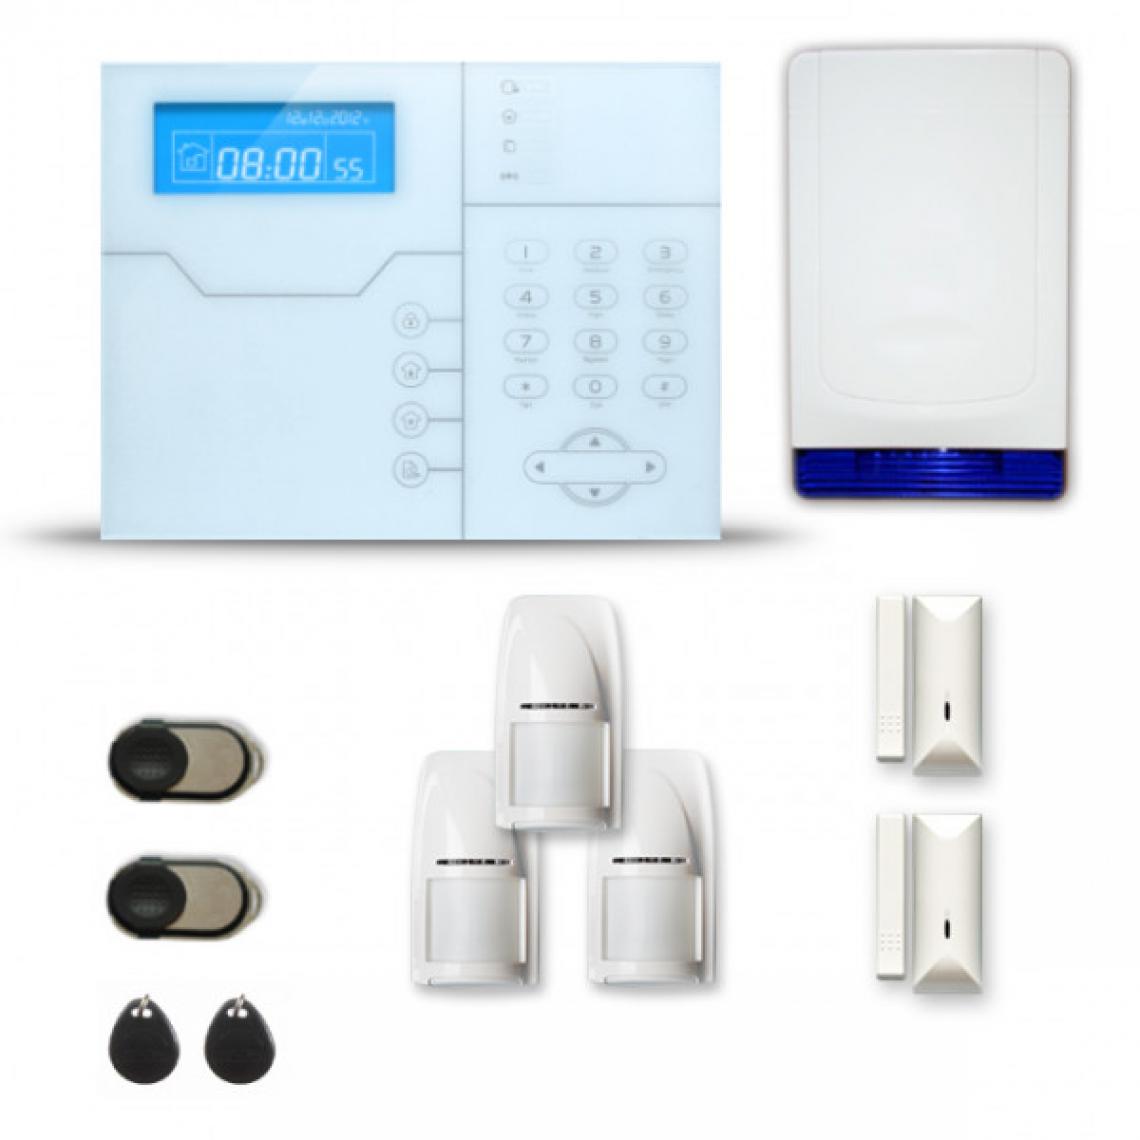 Tike Securite - Alarme maison sans fil SHB35 GSM/IP avec option GSM incluse - Alarme connectée